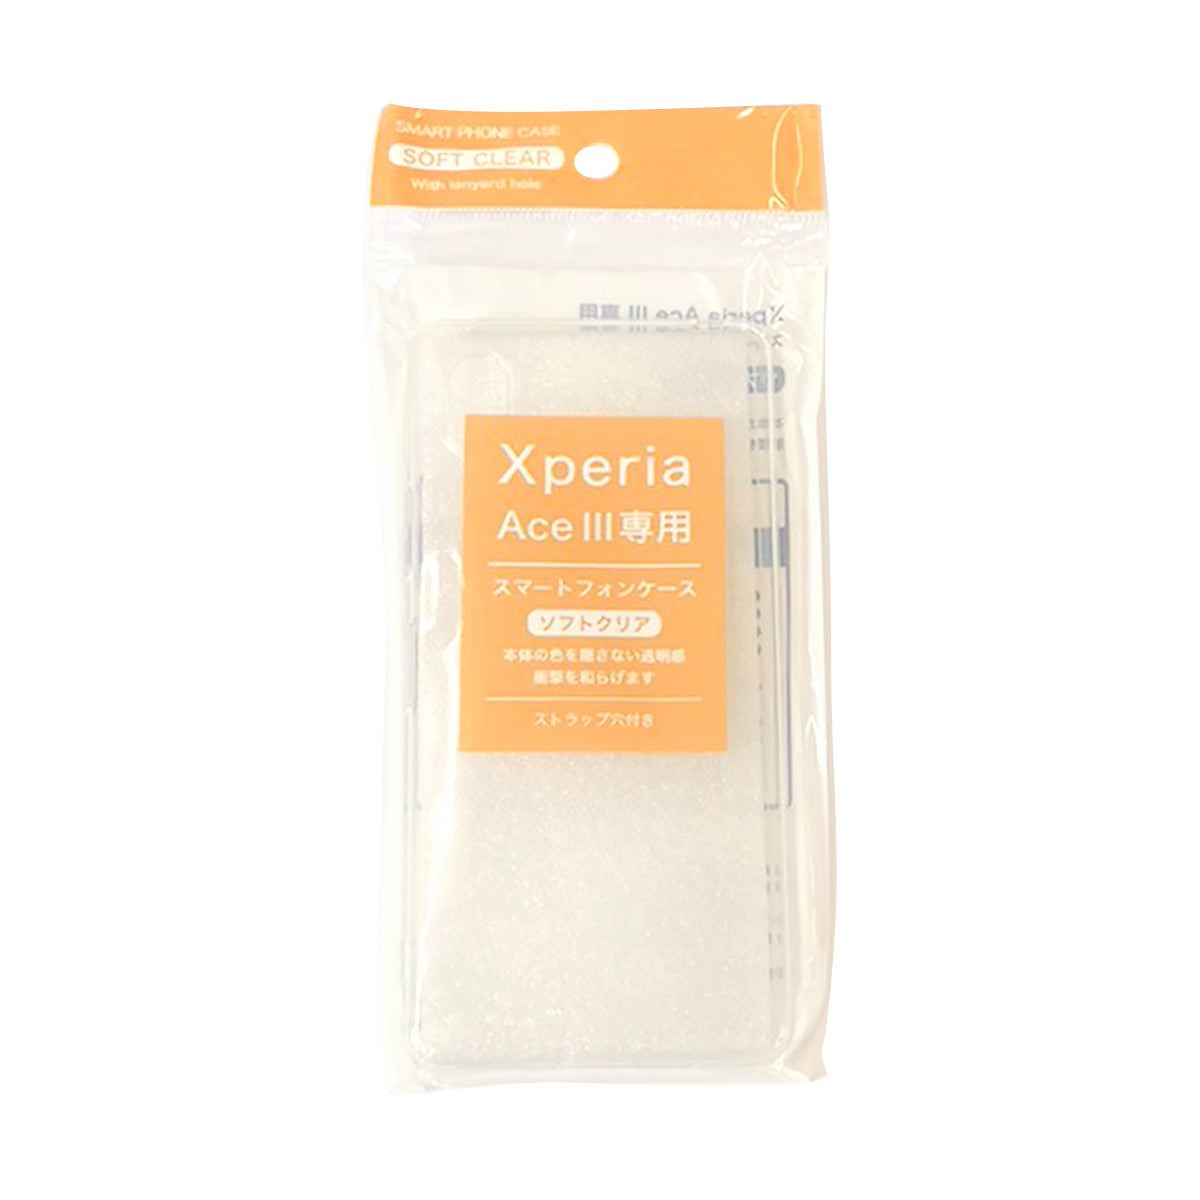 スマホケース Xperia ACEiii スマートフォンケース 9001/350673